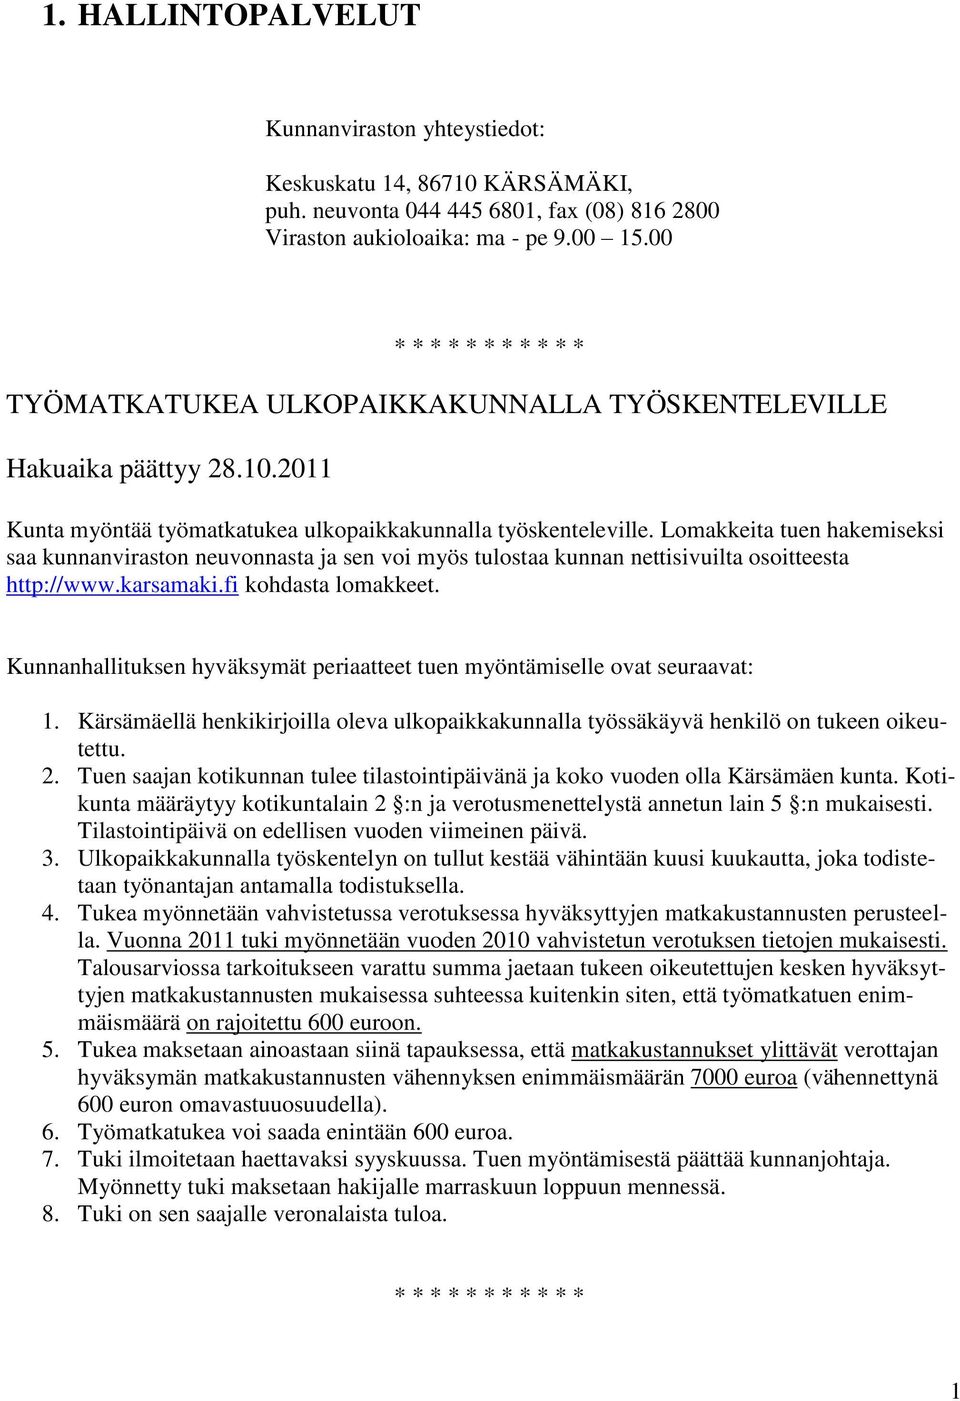 Lomakkeita tuen hakemiseksi saa kunnanviraston neuvonnasta ja sen voi myös tulostaa kunnan nettisivuilta osoitteesta http://www.karsamaki.fi kohdasta lomakkeet.